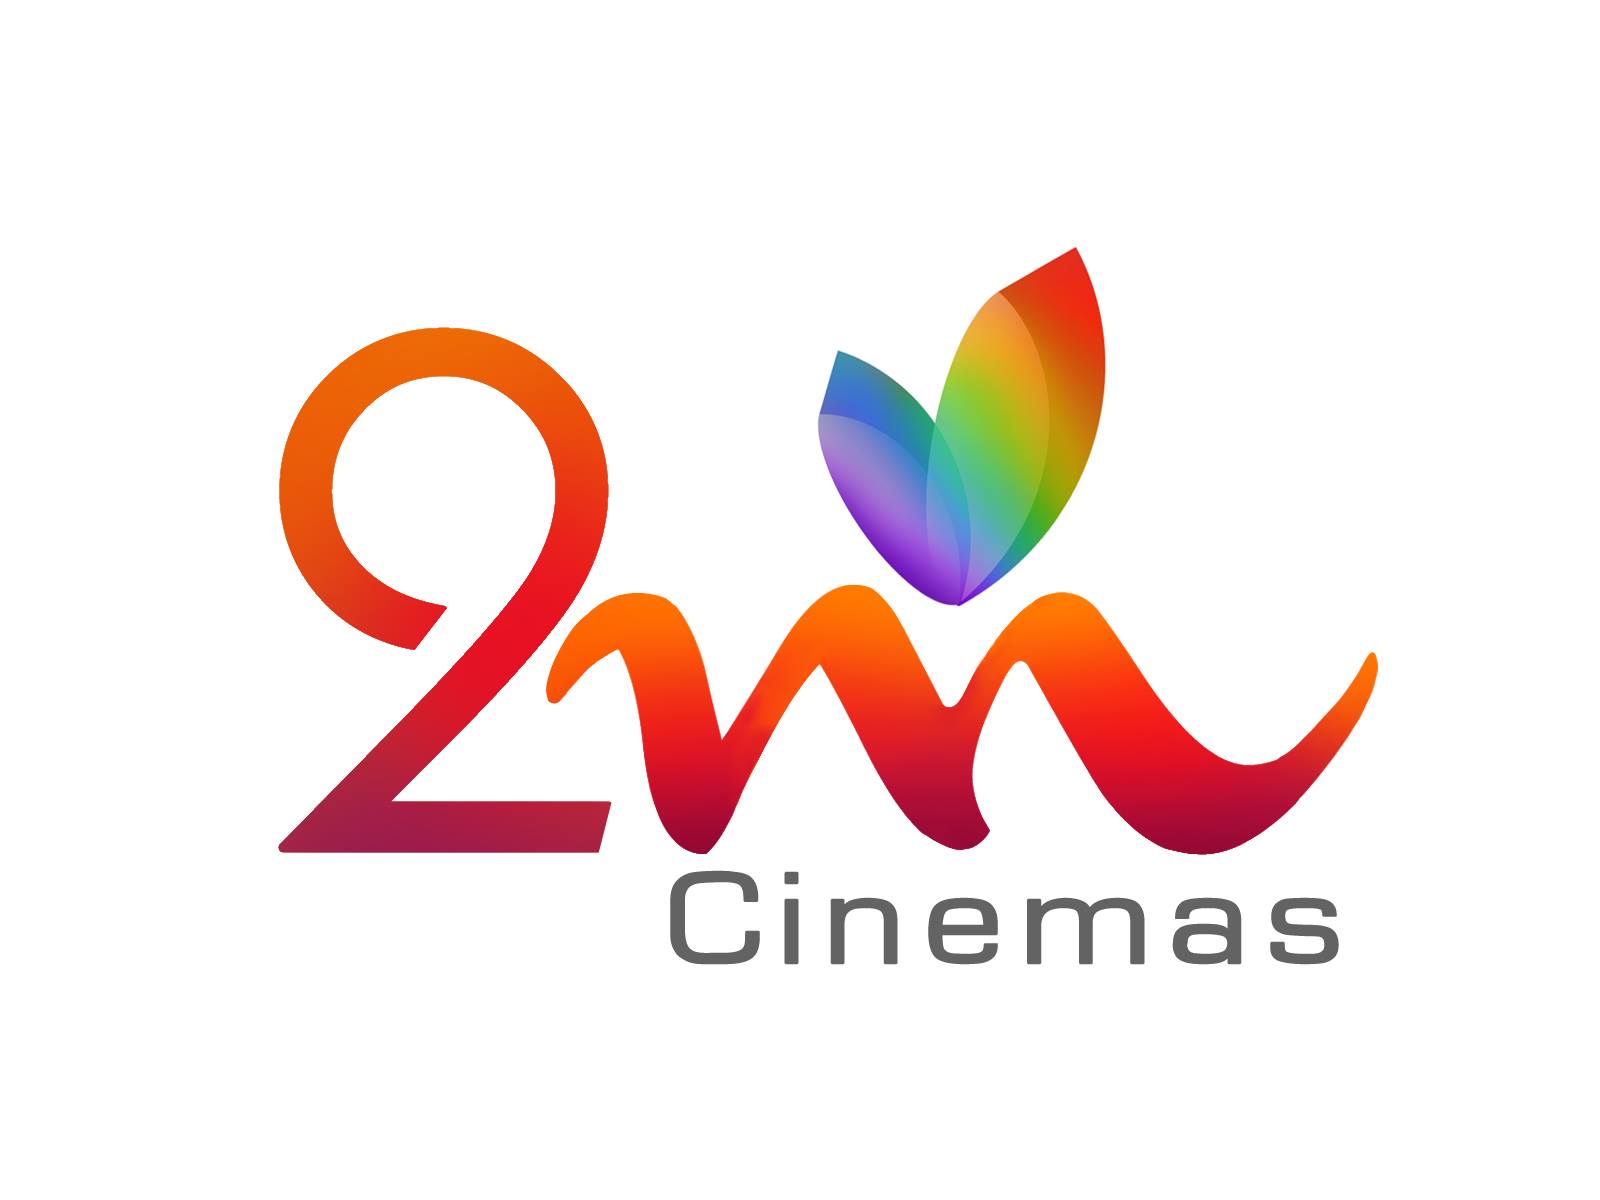 2M Cinemas